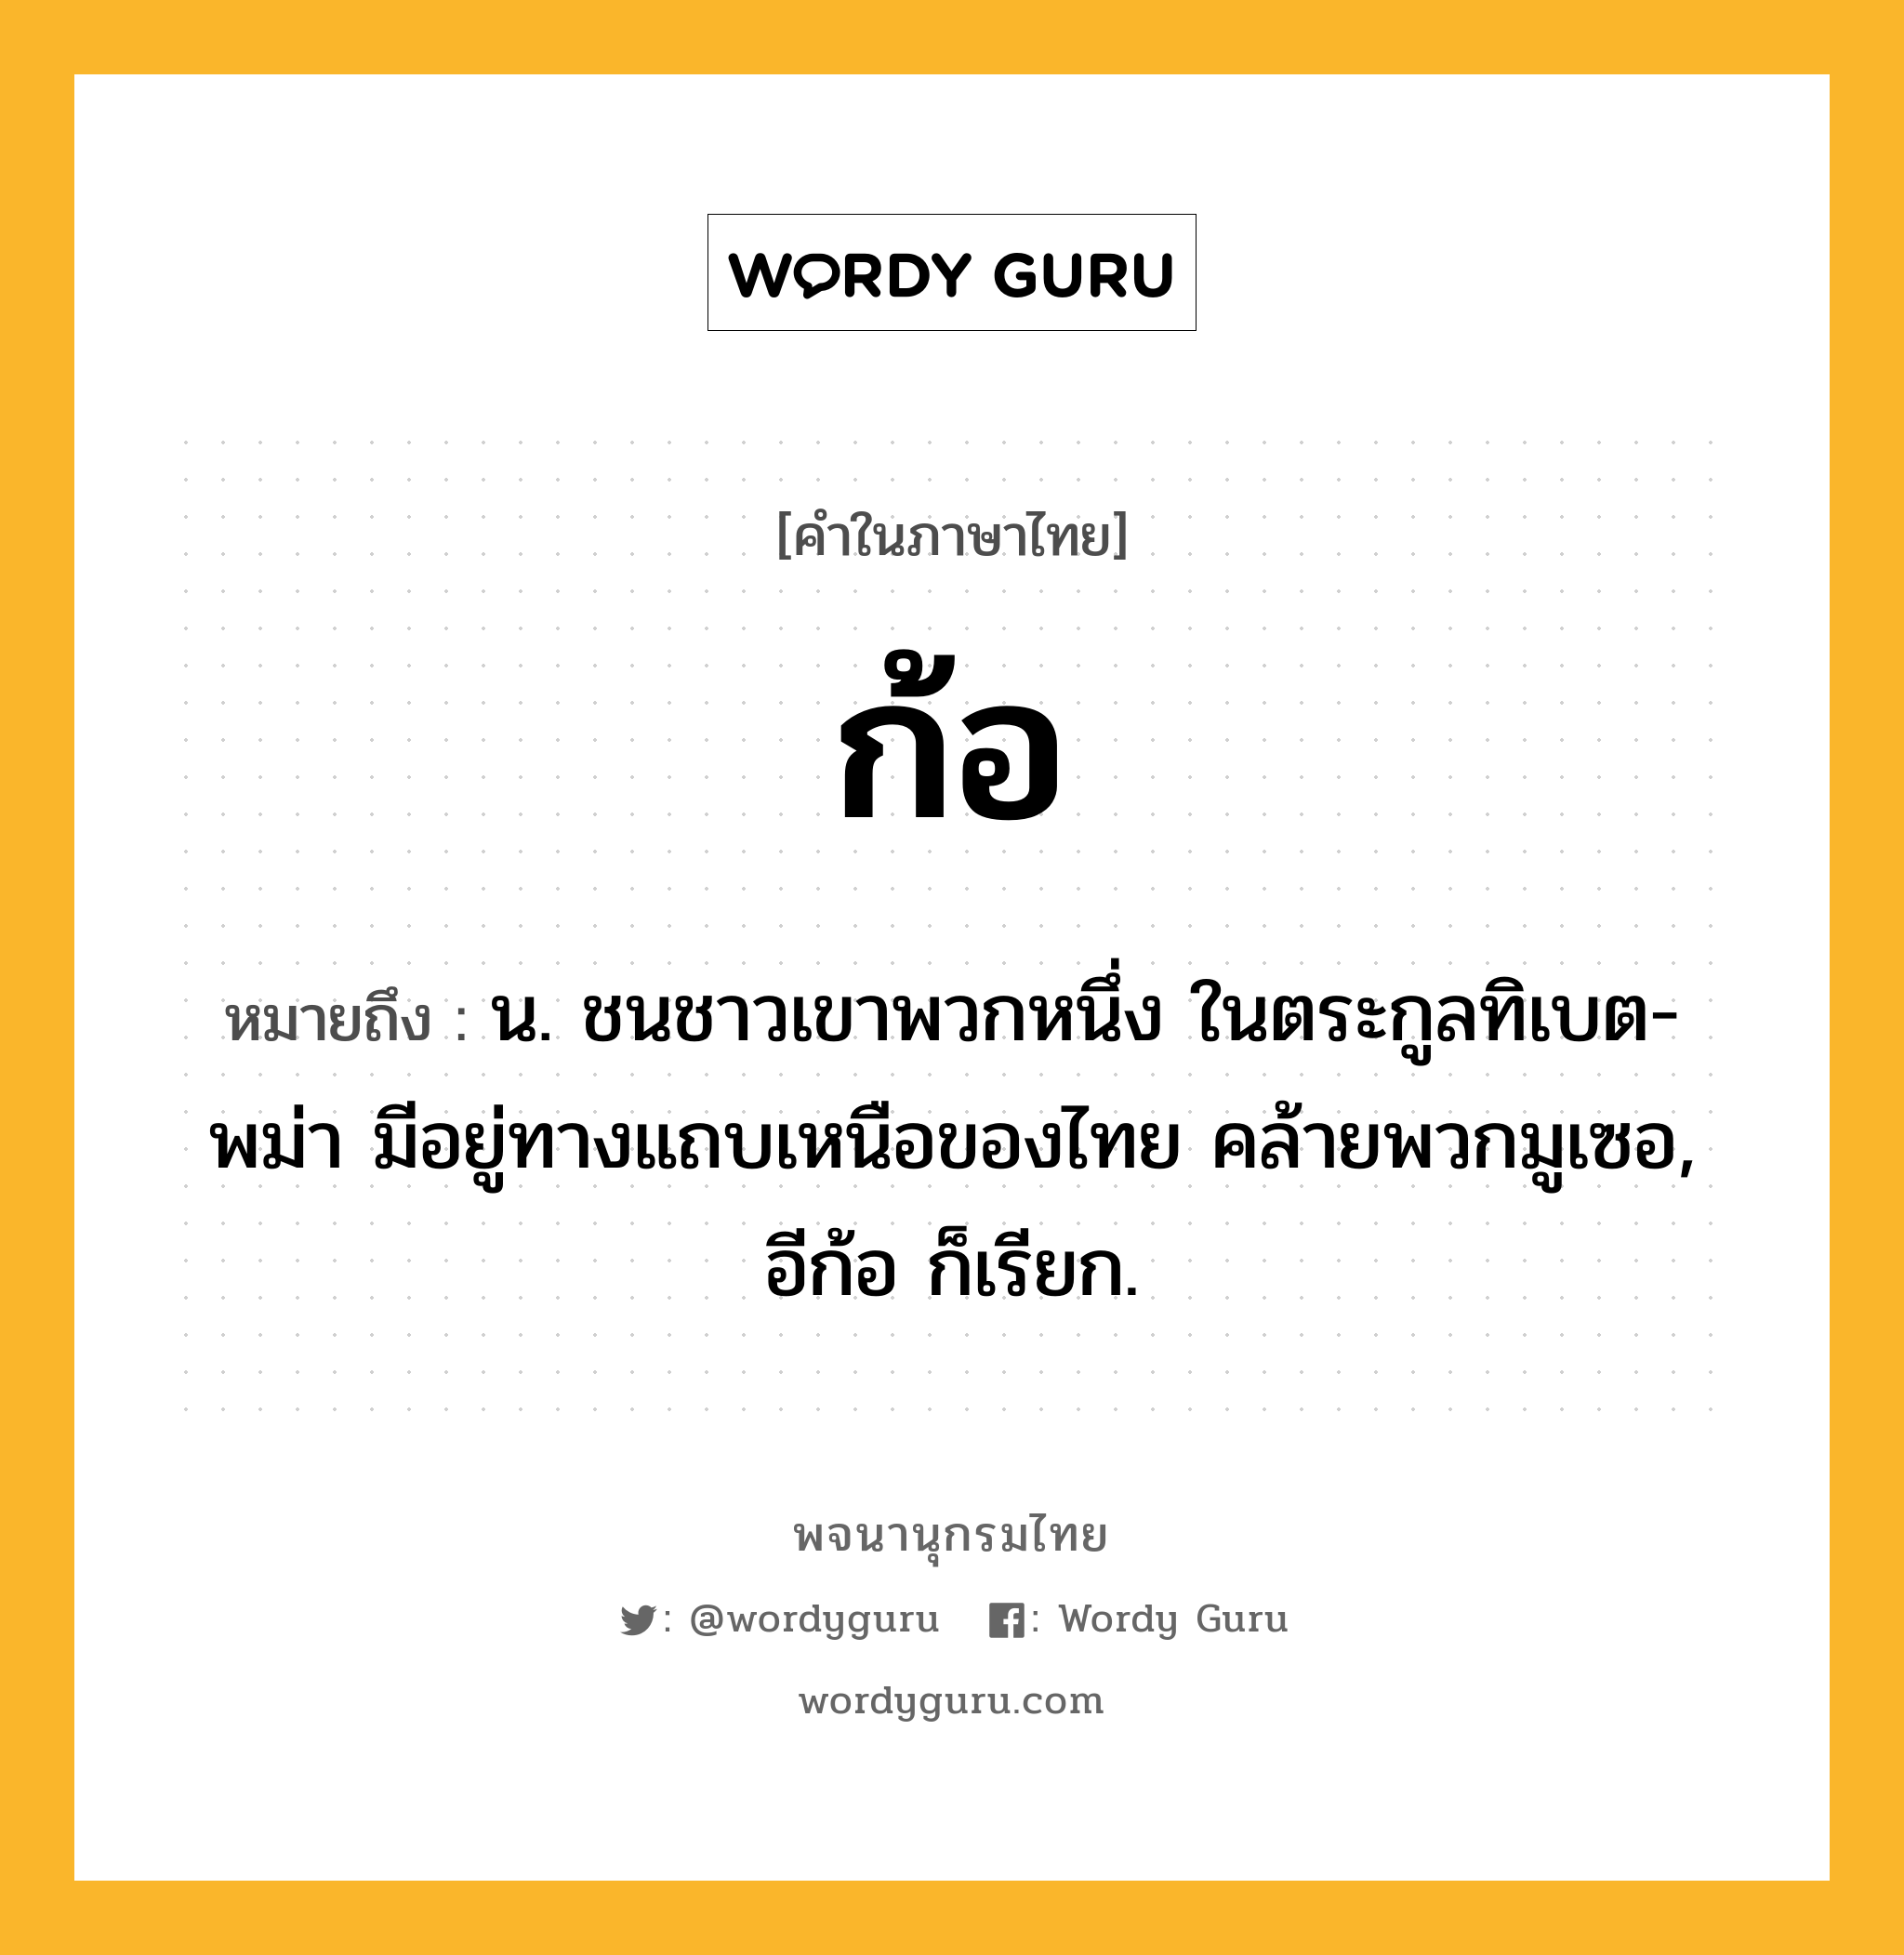 ก้อ ความหมาย หมายถึงอะไร?, คำในภาษาไทย ก้อ หมายถึง น. ชนชาวเขาพวกหนึ่ง ในตระกูลทิเบต-พม่า มีอยู่ทางแถบเหนือของไทย คล้ายพวกมูเซอ, อีก้อ ก็เรียก.